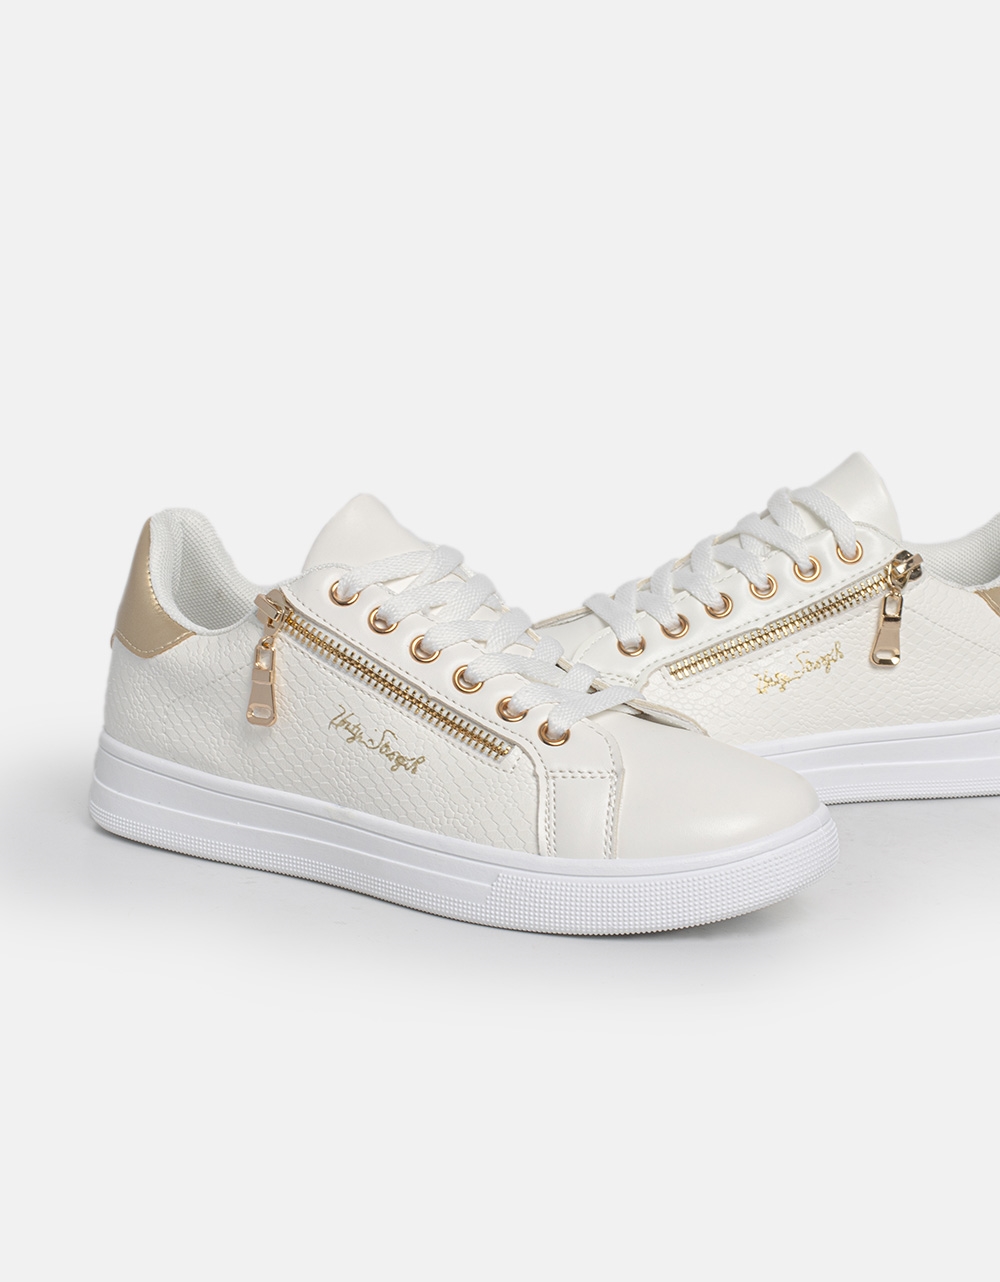 Εικόνα από Sneakers με διακοσμητικό φερμουάρ στο πλαϊνό μέρος Λευκό/Χρυσό